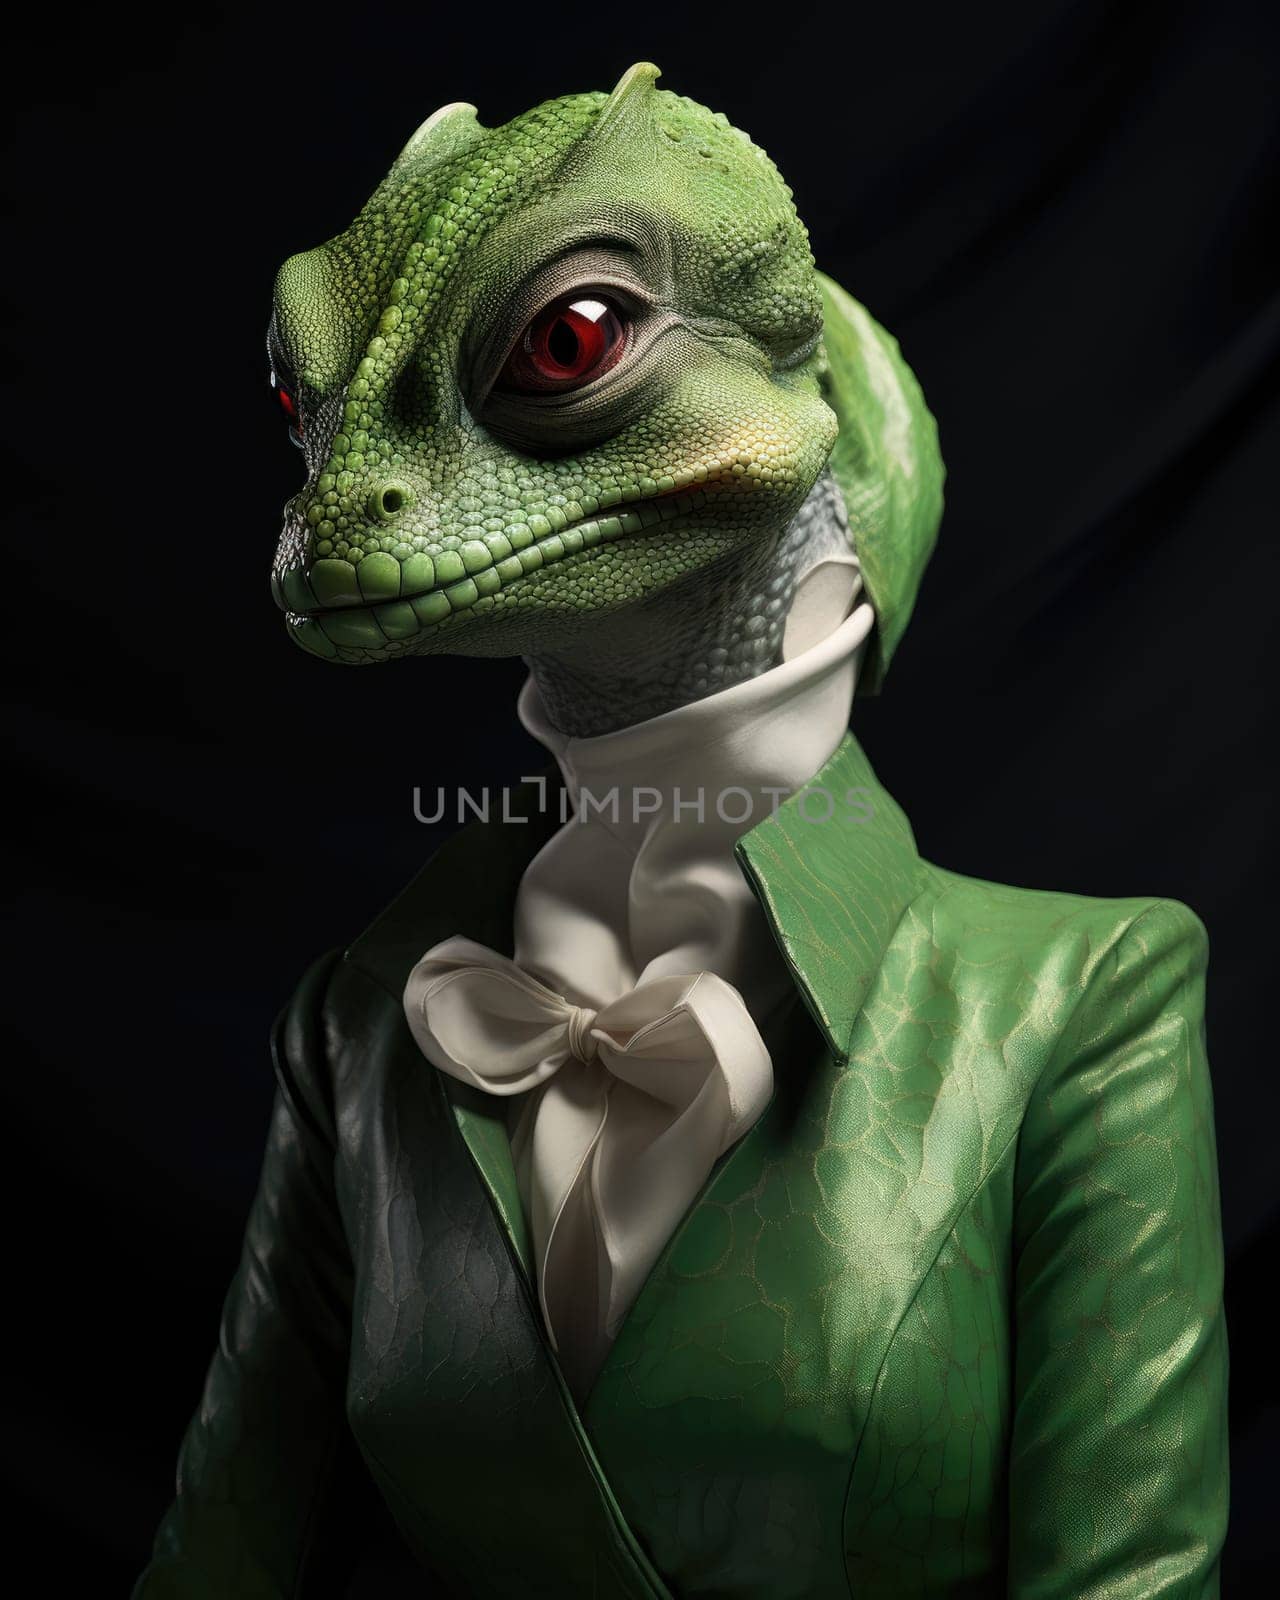 Reptiloid humanoid. Portrait of a lizard woman by palinchak